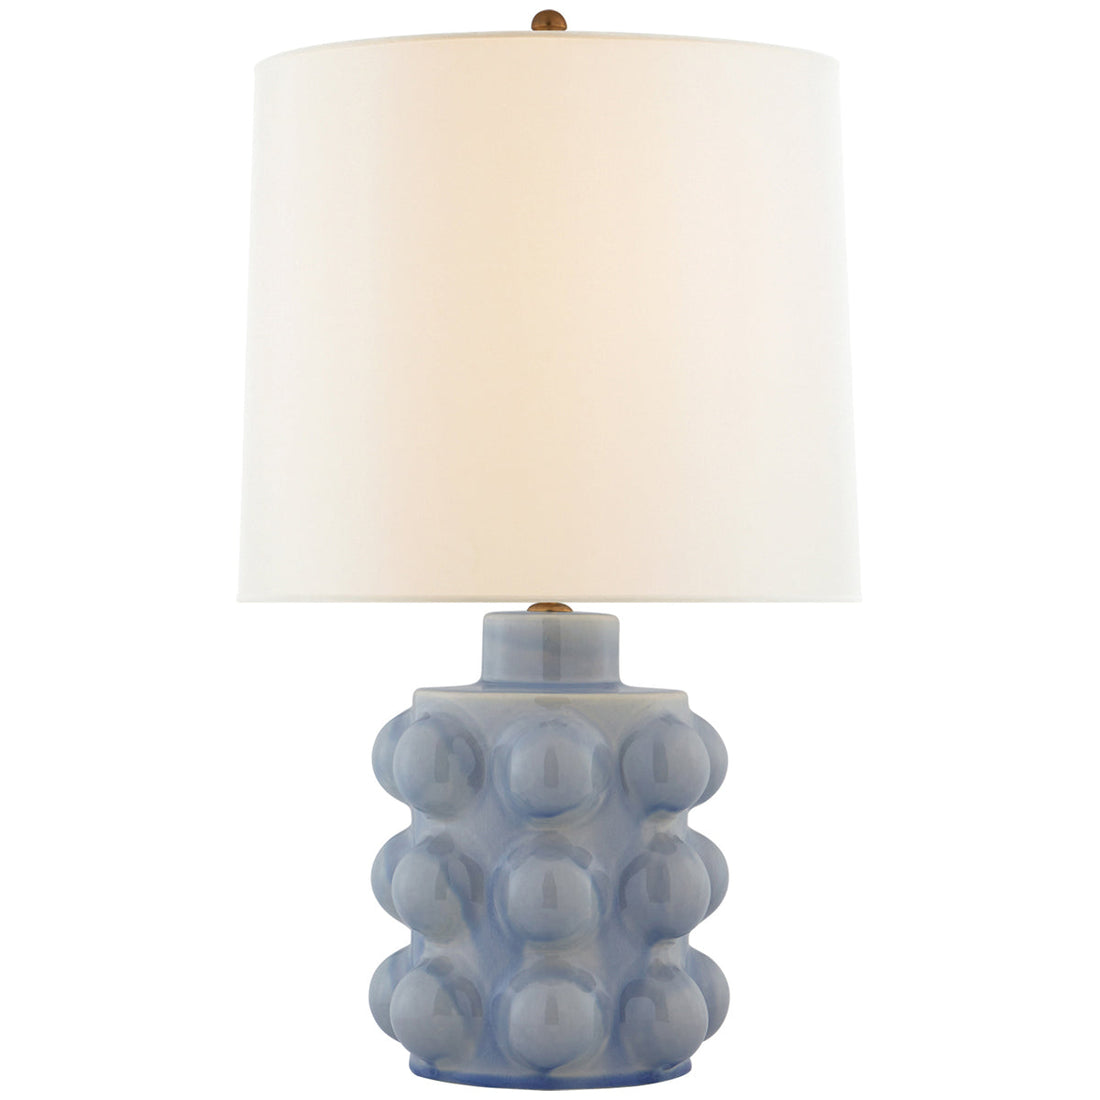 Visual Comfort Vedra Medium Table Lamp